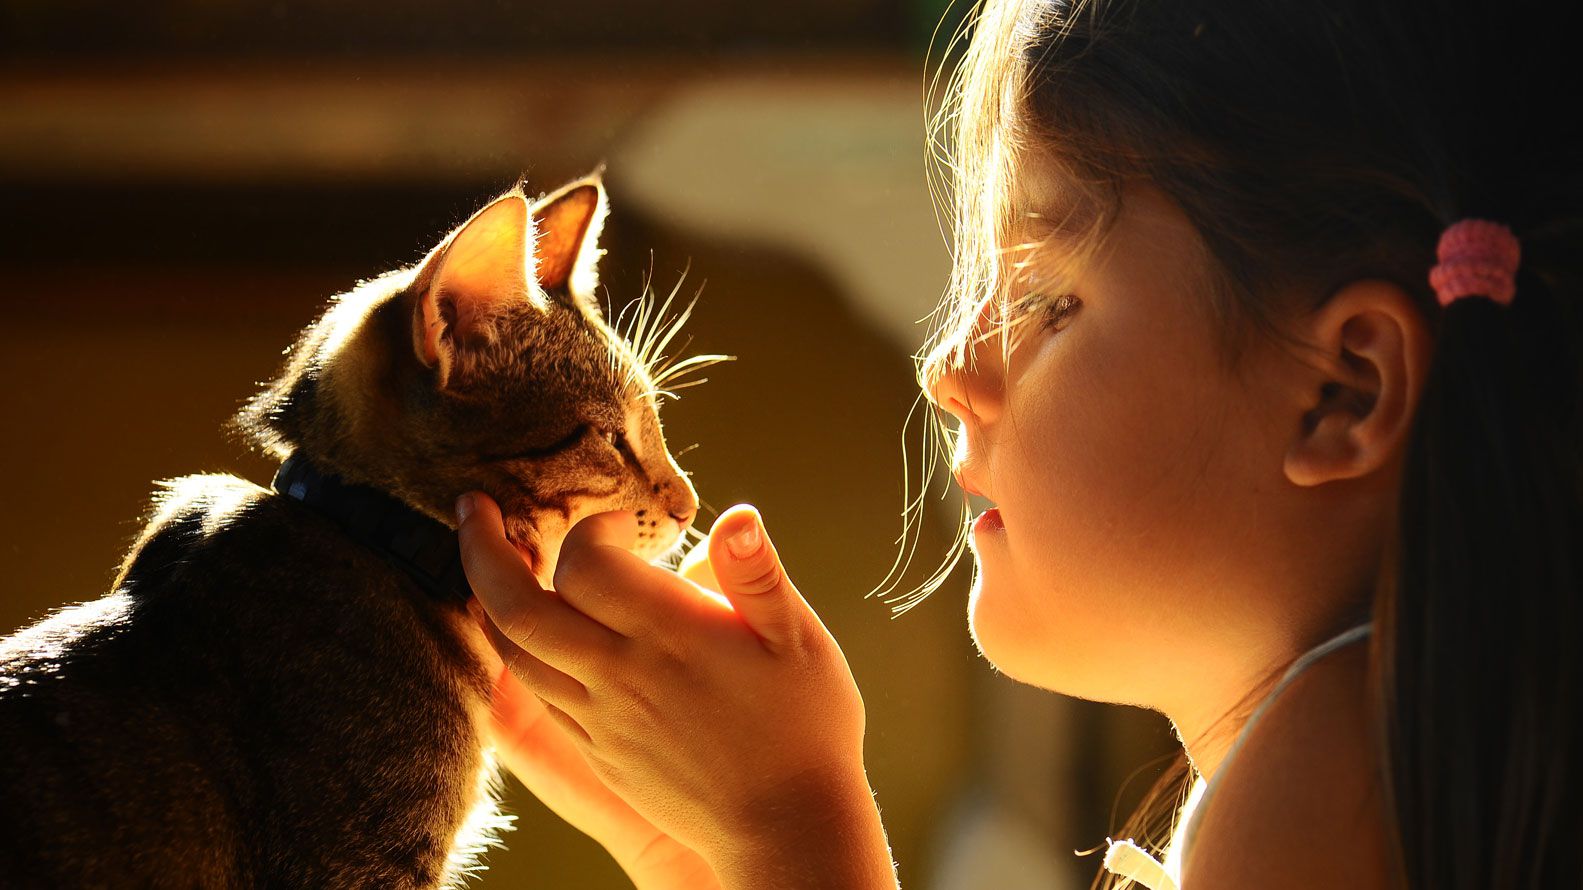 La necesidad del contacto físico es humana y también de muchos otros mamíferos. (Shutterstock)